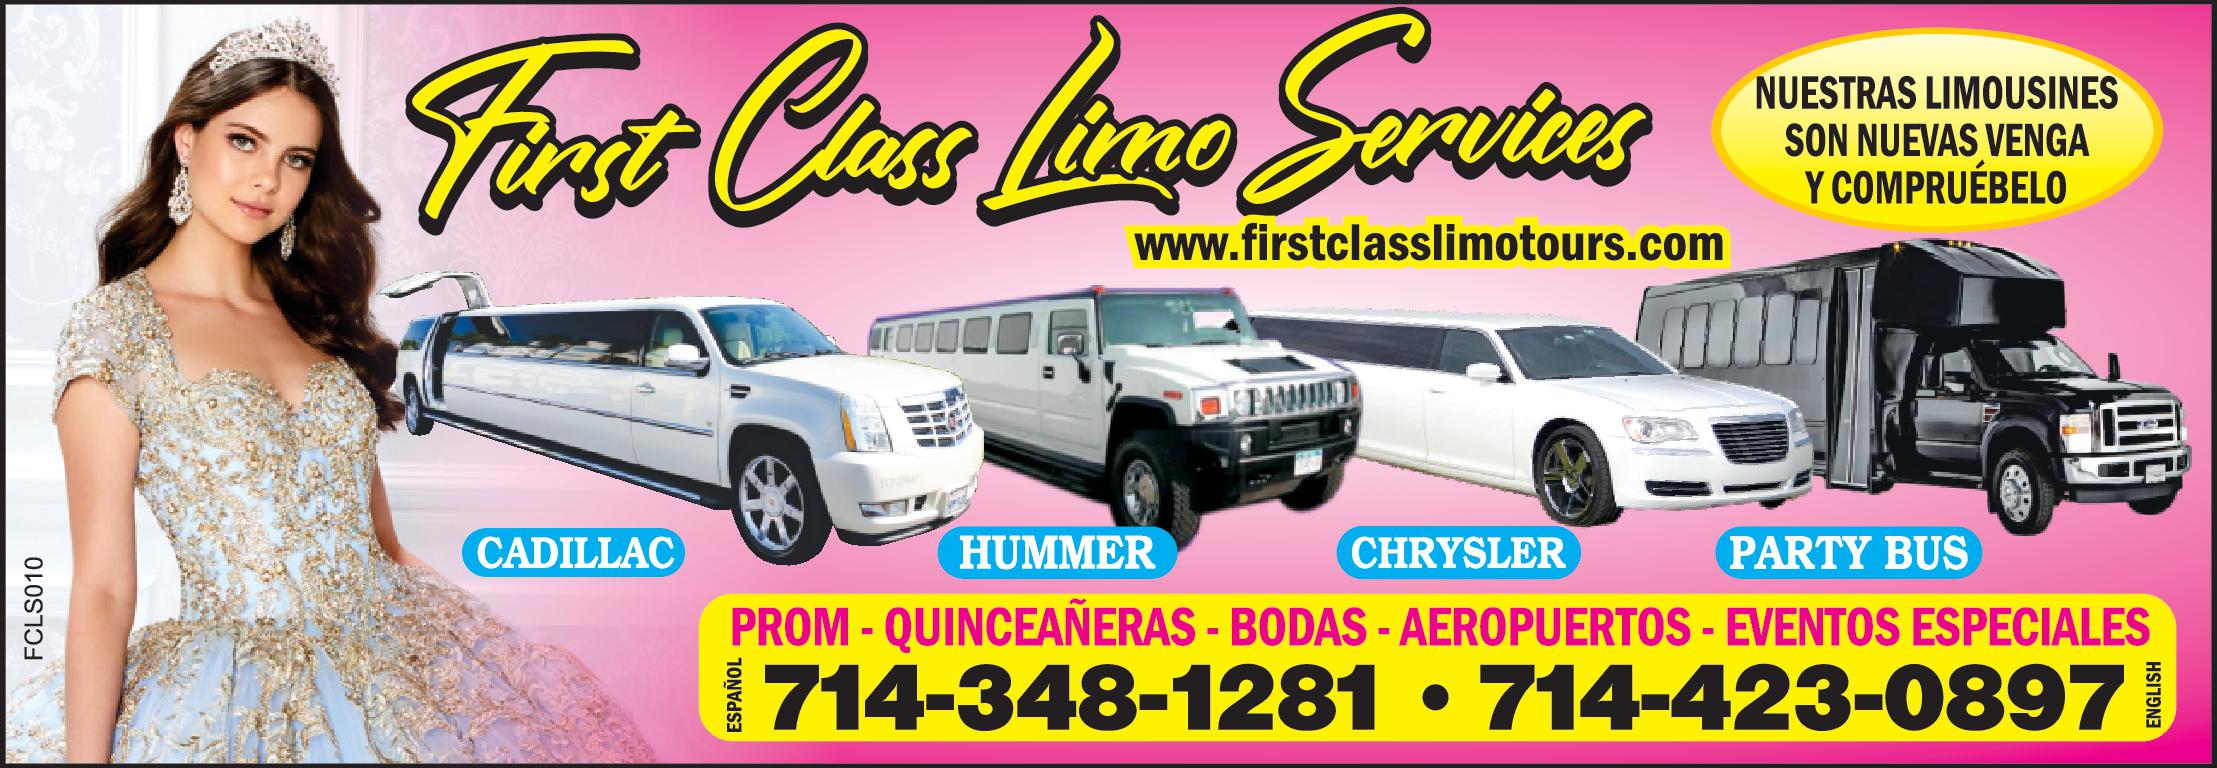 First Class Limo Services
NUESTRAS LIMOUSINES SON NUEVAS VENGA Y COMPRUEBELO 
www.firstclasslimotours.com
CADILAC, HUMMER, CHRYSLER, PARTY BUS
PROM QUINCEÑERAS, BODAS, AEROPUERTOS, EVENTOS, ESPECIALES. 
714-348-1281 -714-423-0897